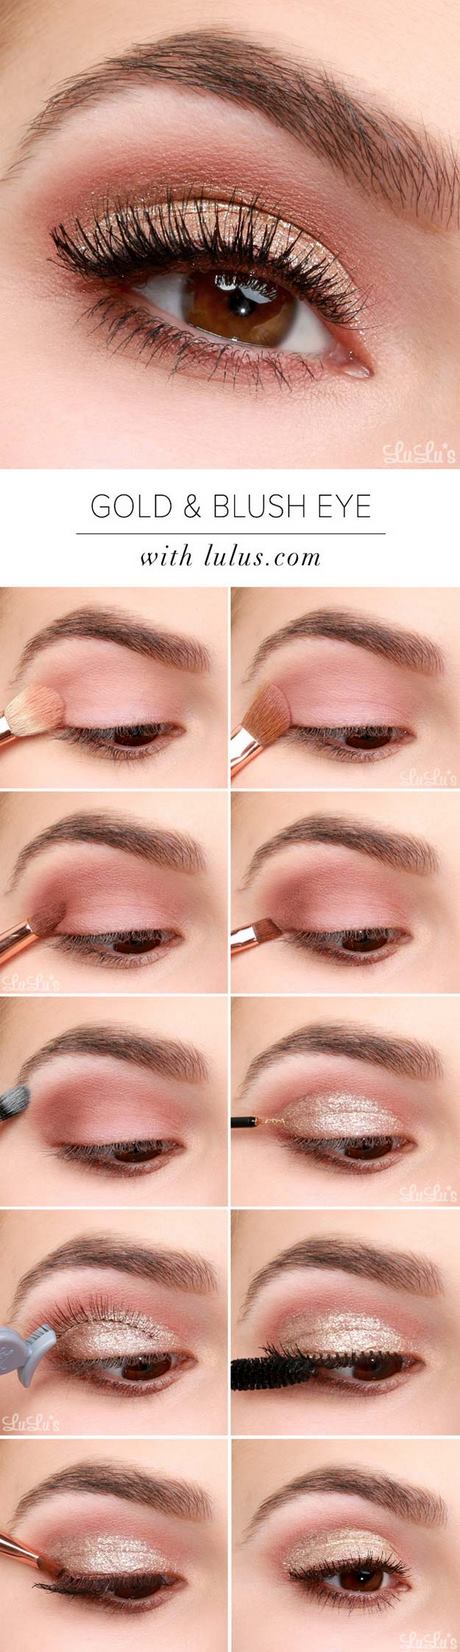 makeup-tips-tutorial-24_17 Make-up tips tutorial